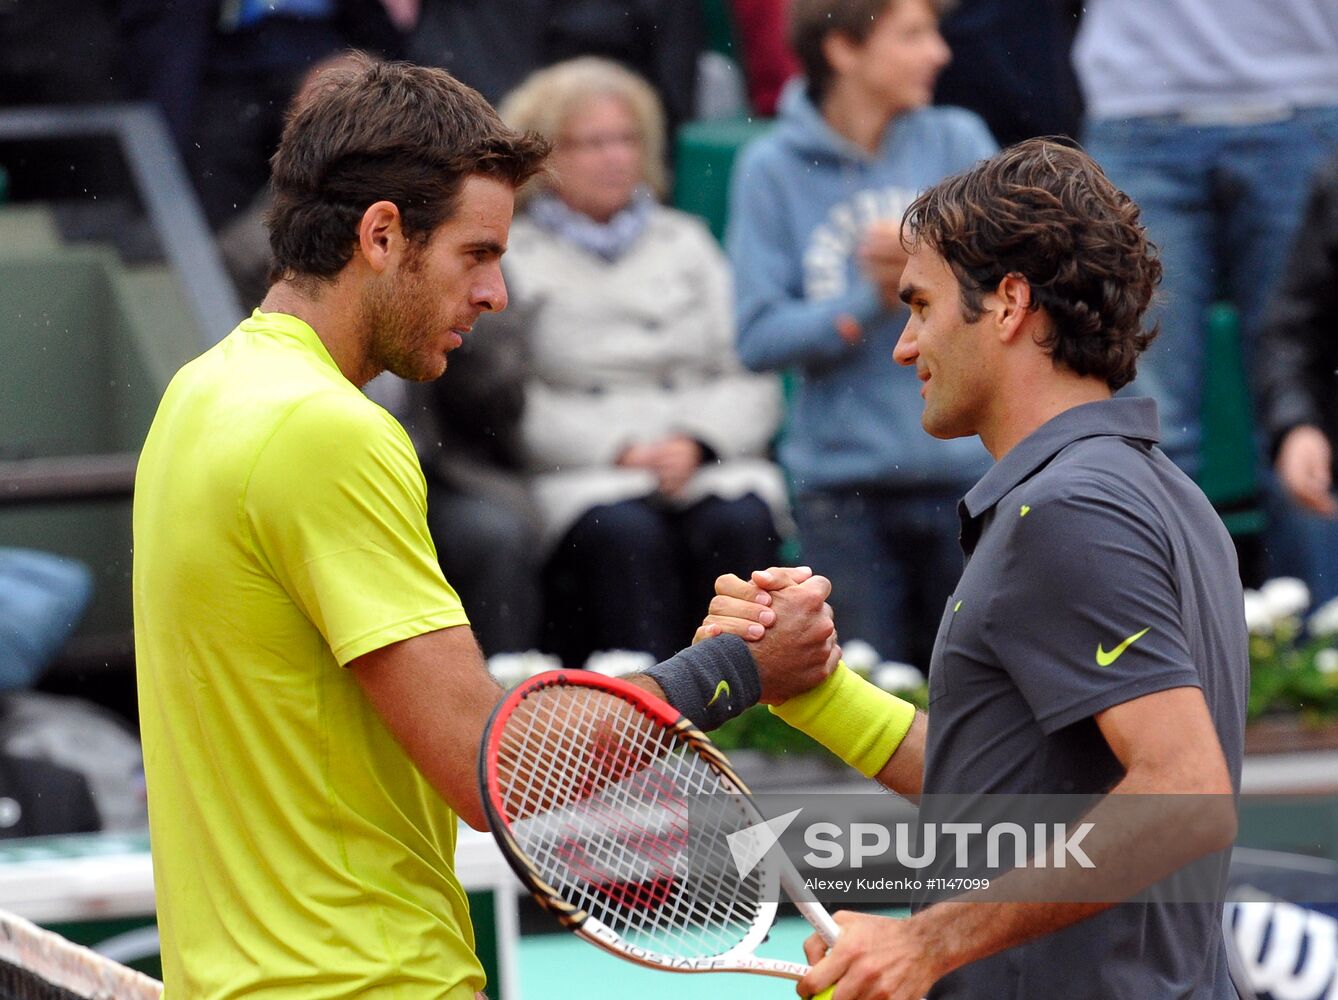 Roland Garros Tennis 2012: Day Ten